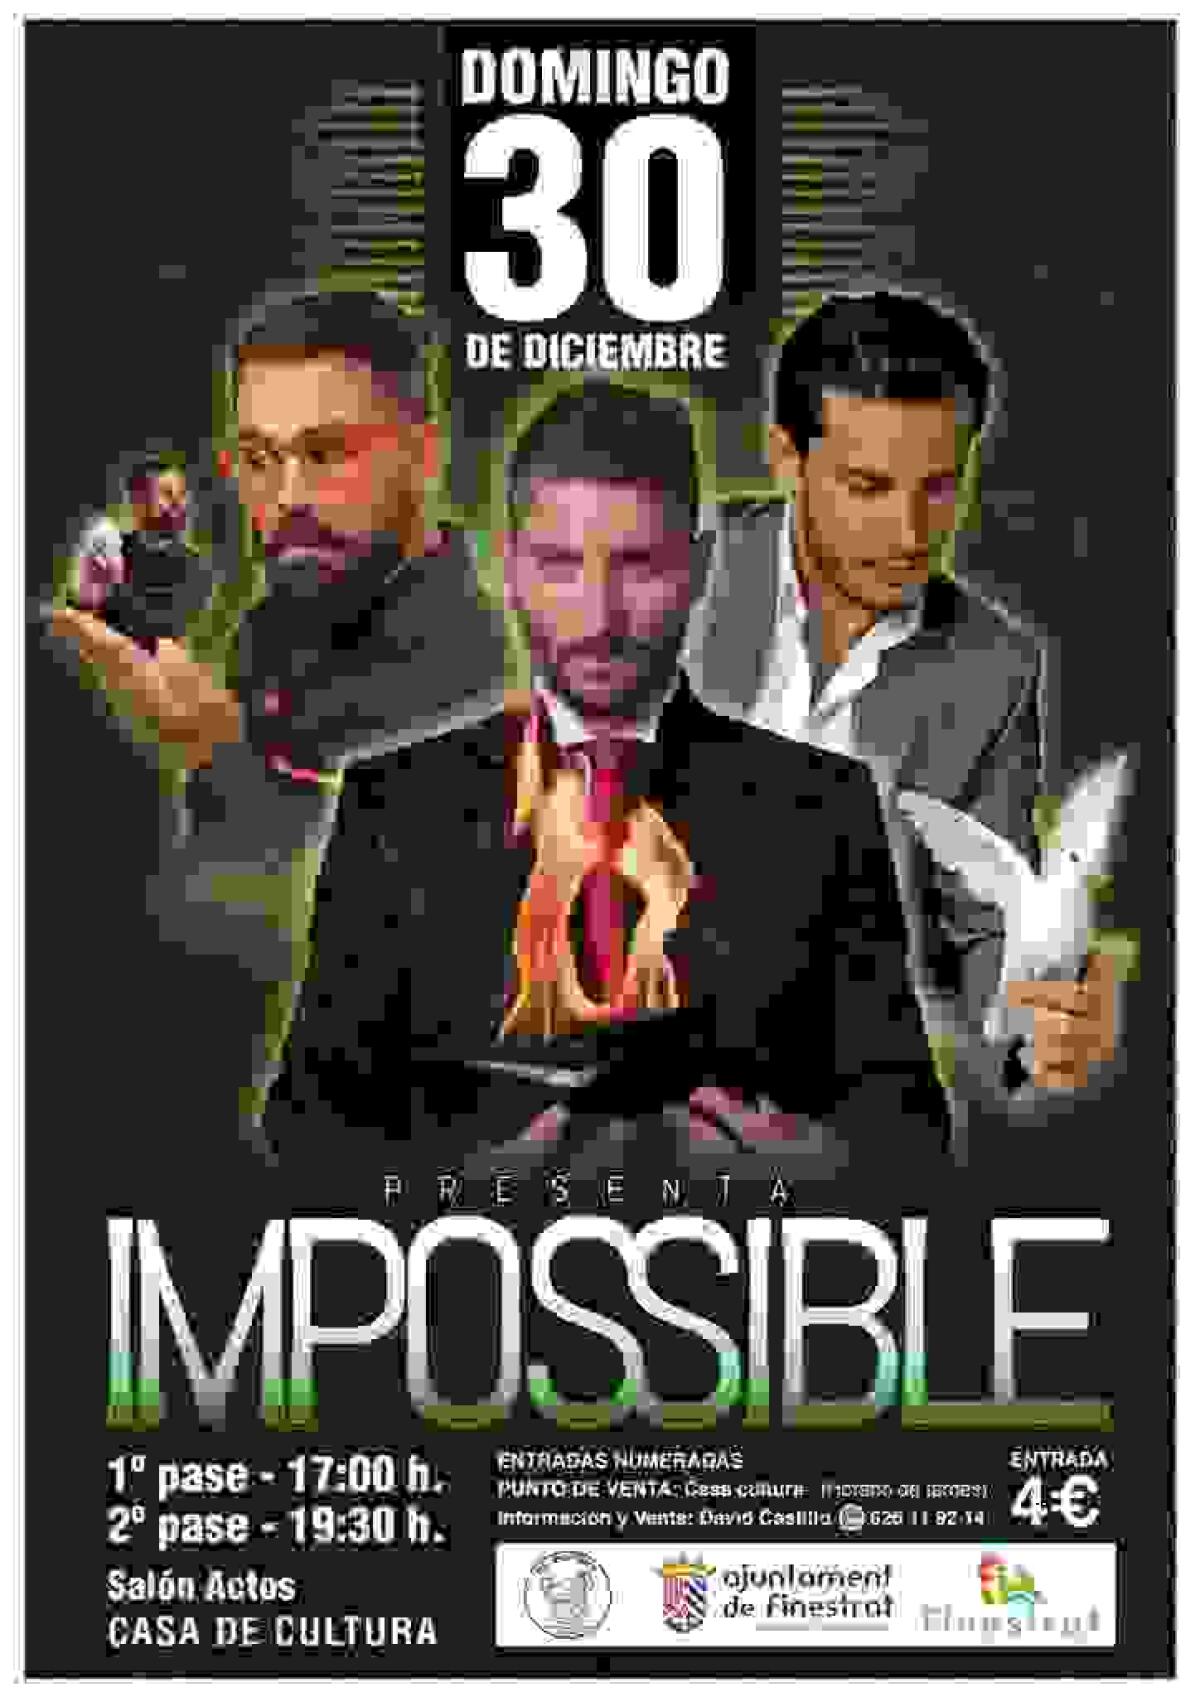 La Concejalía de Juventud de Finestrat organiza el espectáculo de magia “Impossible” para el domingo 30 de diciembre